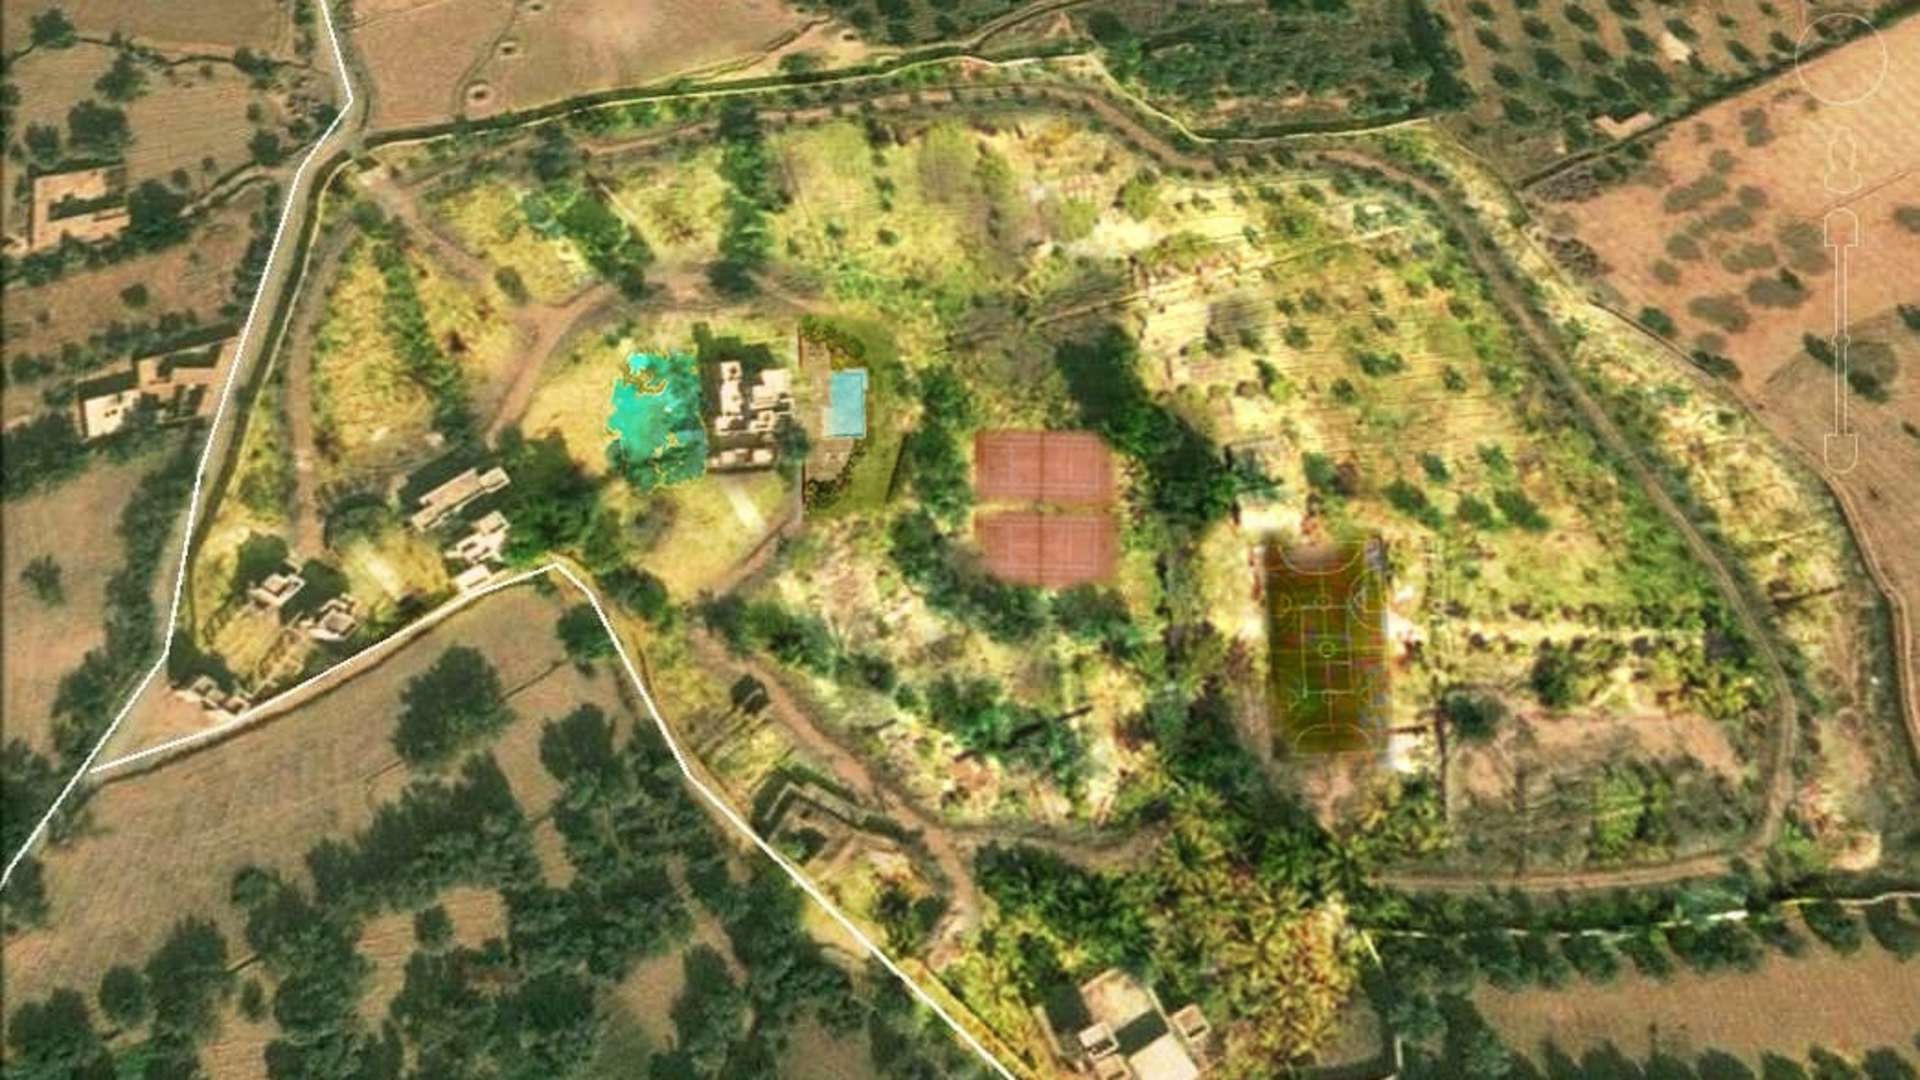 Vente,Terrains & Fermes,Terrain 5Ha bien planté idéalement pour projet de maison d'hôtes,Marrakech,Sidi Abdellah Ghiyate